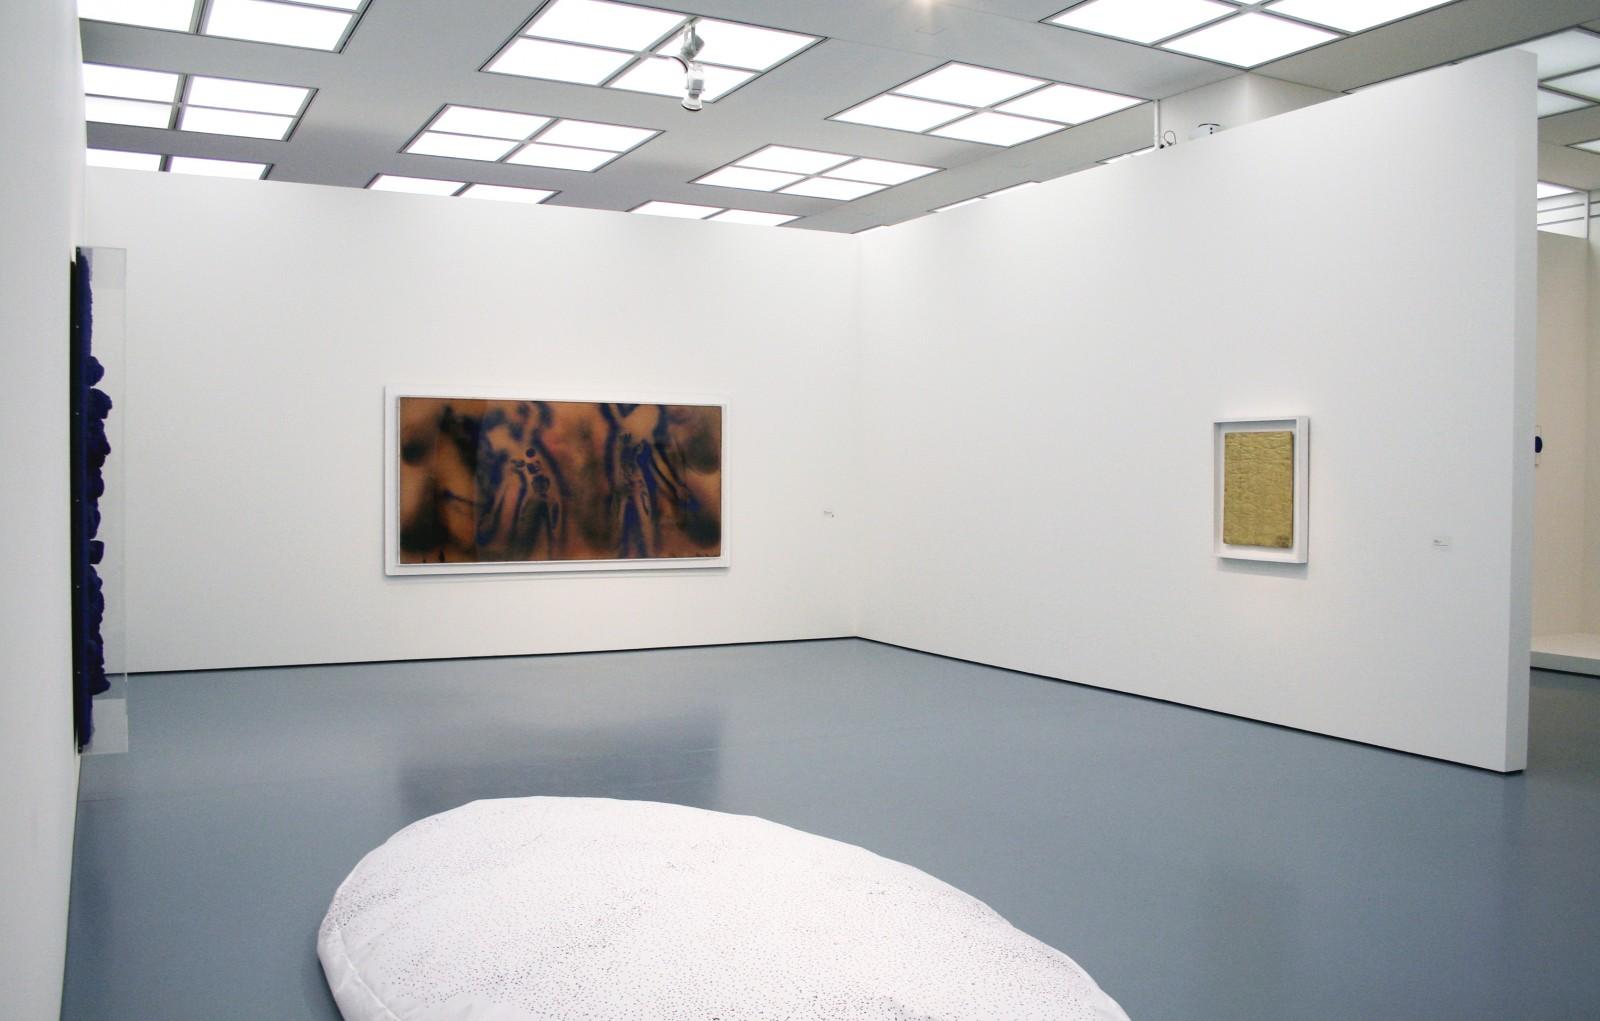 Vue de l'exposition, "Zero - Internationale Künstler-Avantgarde der 50er/60er Jahre", Museum Kunstpalast, 2006 (RE 18, FC 1, MG 11)